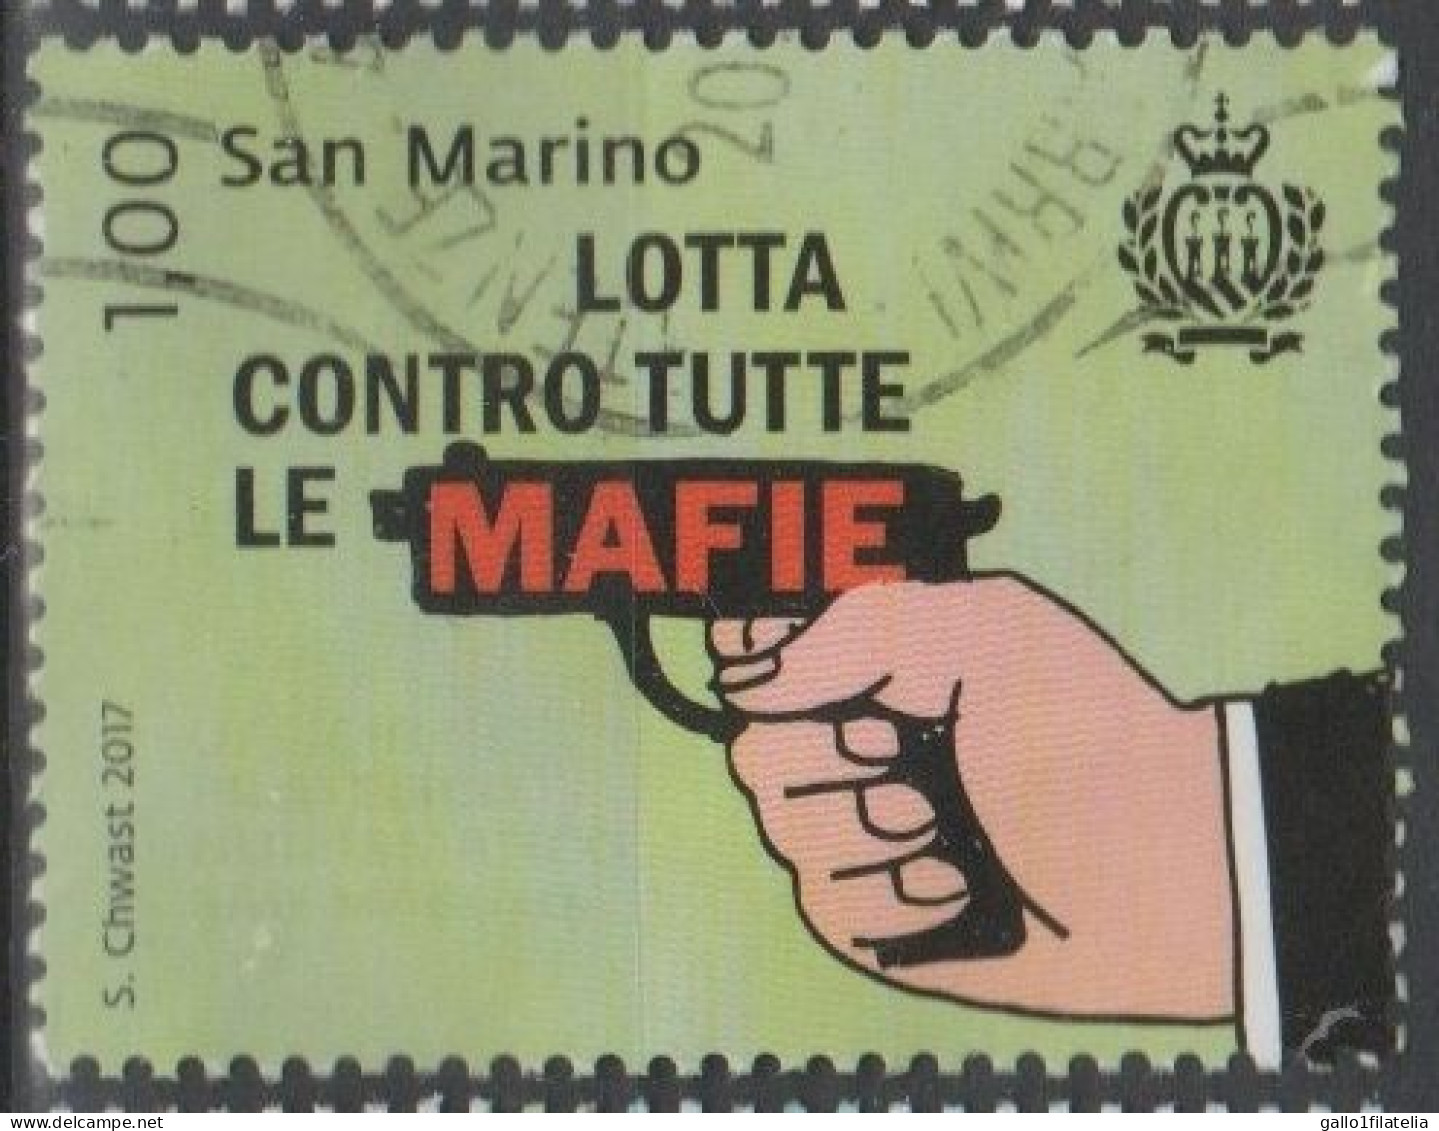 2017 - SAN MARINO - LOTTA CONTRO TUTTE LE MAFIE / FIGHT AGAINST ALL MAFIAS - USATO - Gebruikt